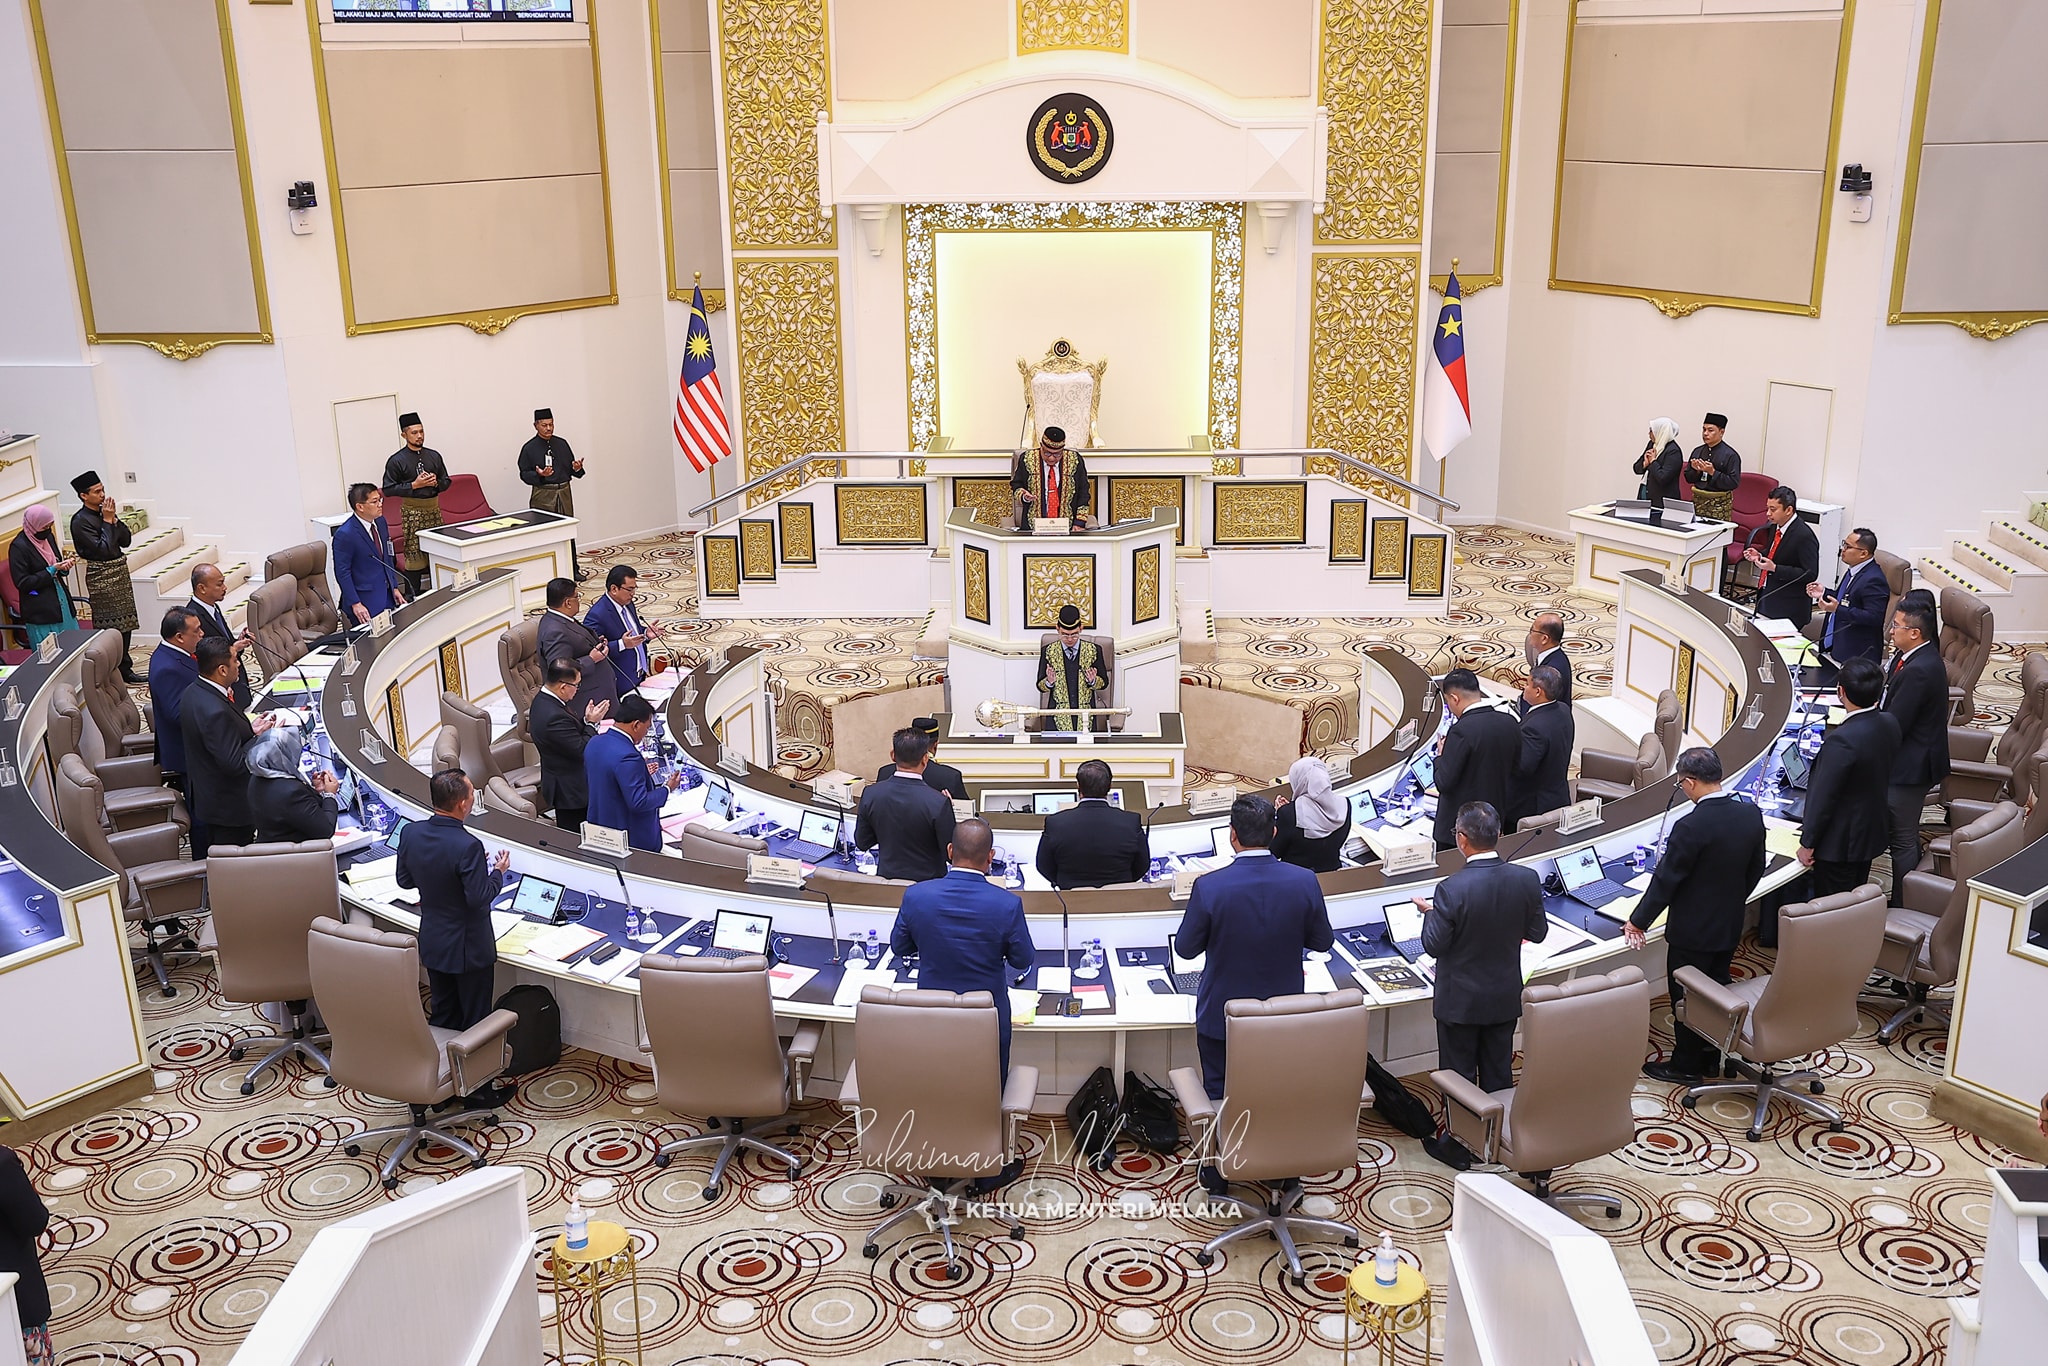 Ketua Menteri Melaka Yang Baharu Angkat Sumpah Esok